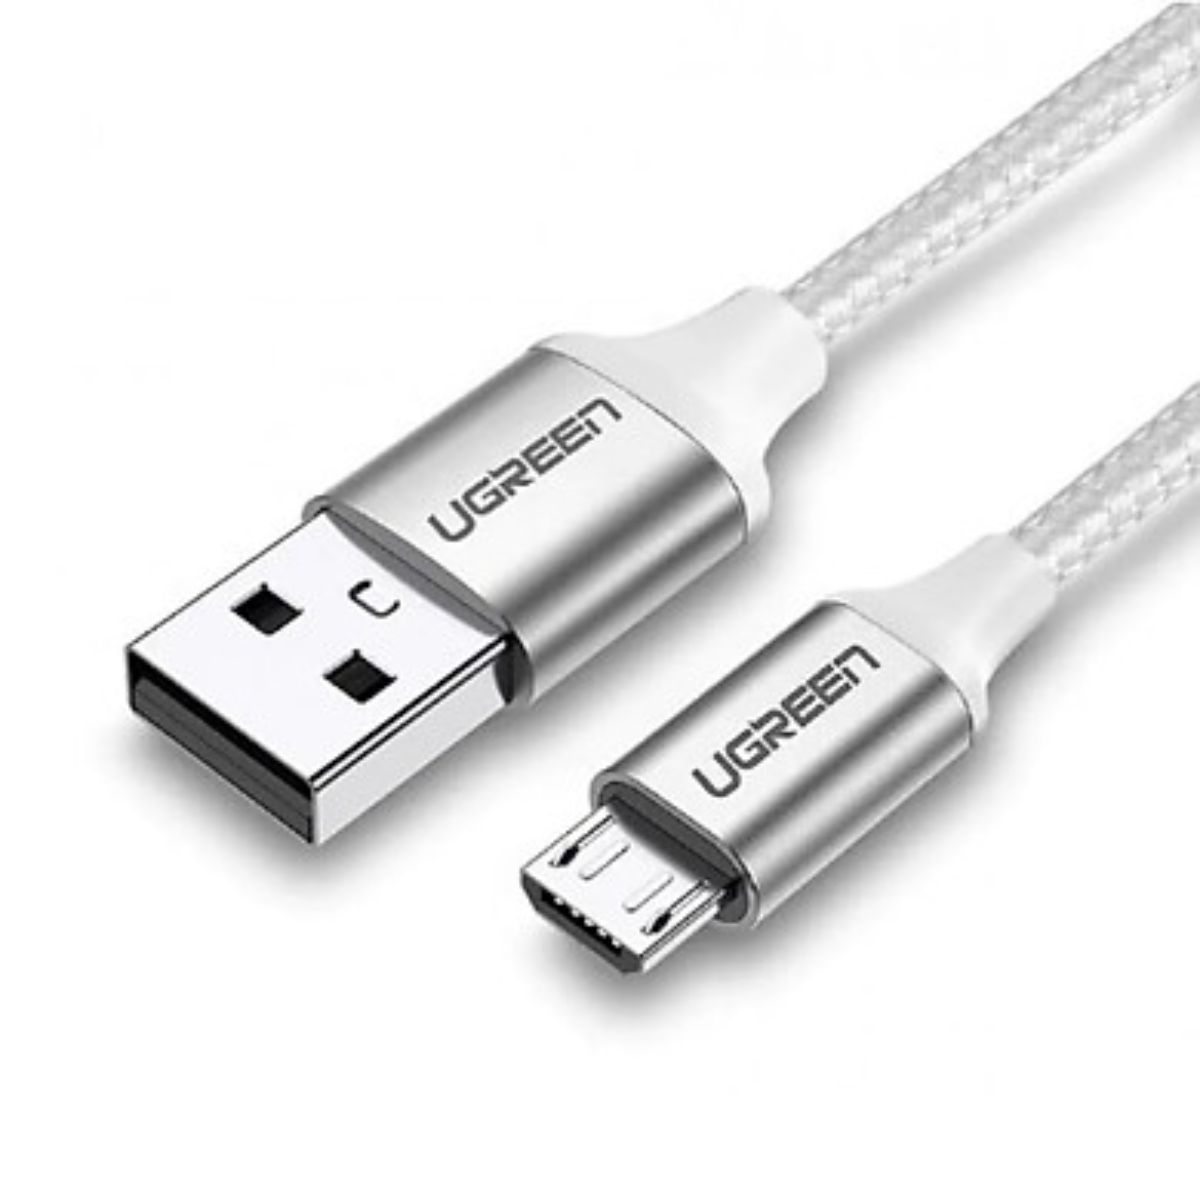 Cáp sạc nhanh Micro USB Ugreen 60153 US290 chiều dài 2m, màu trắng